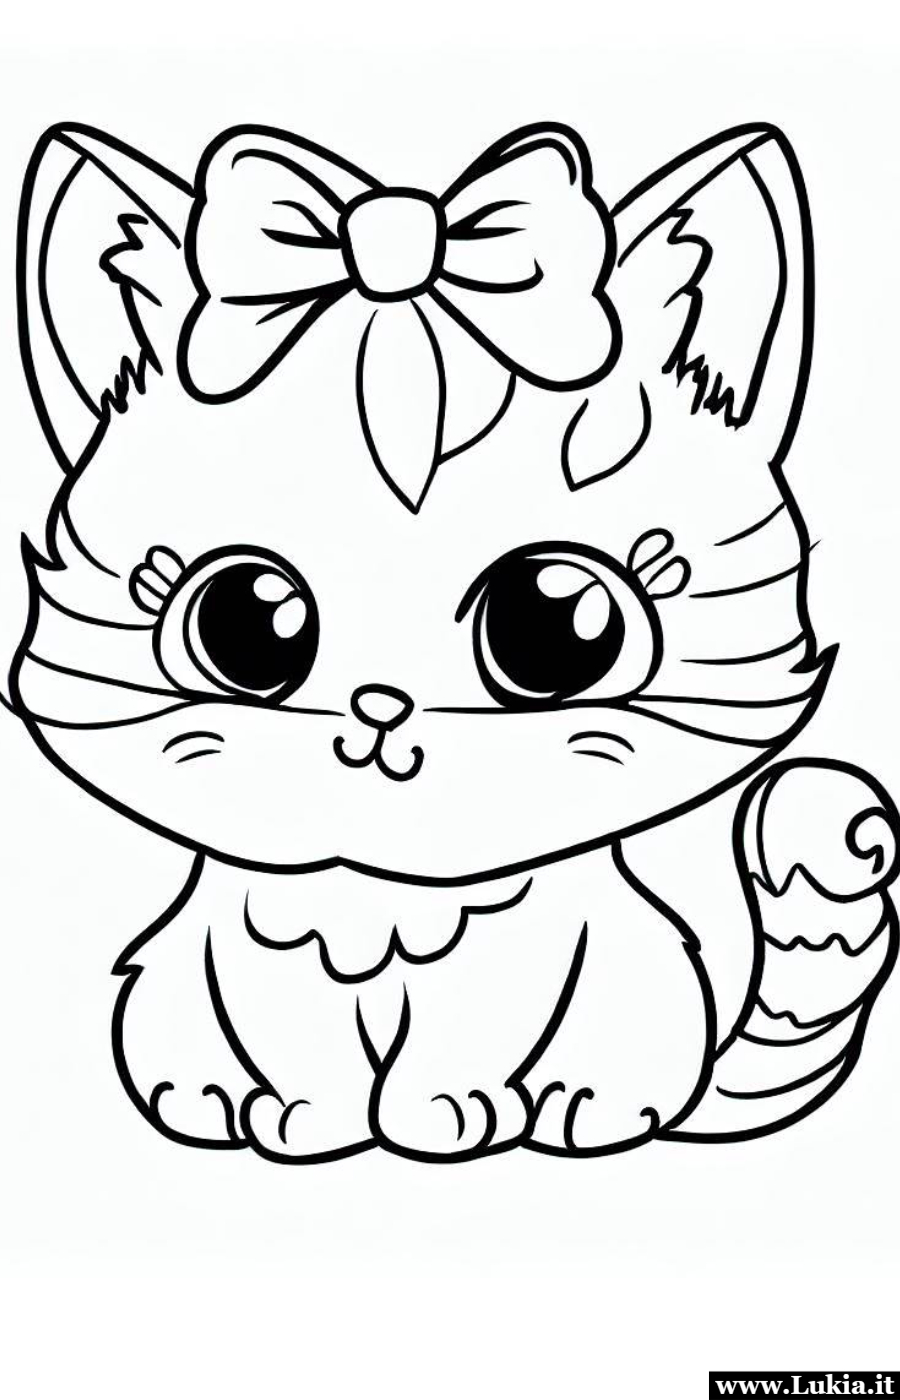 Un Disegno da Colorare per Bambini: Il Simpatico Gattino Disegno da colorare gattino con fiocco per bambini. Stampa e colora questa immagini con una dolce e tenera gattina. - Immagini gratis